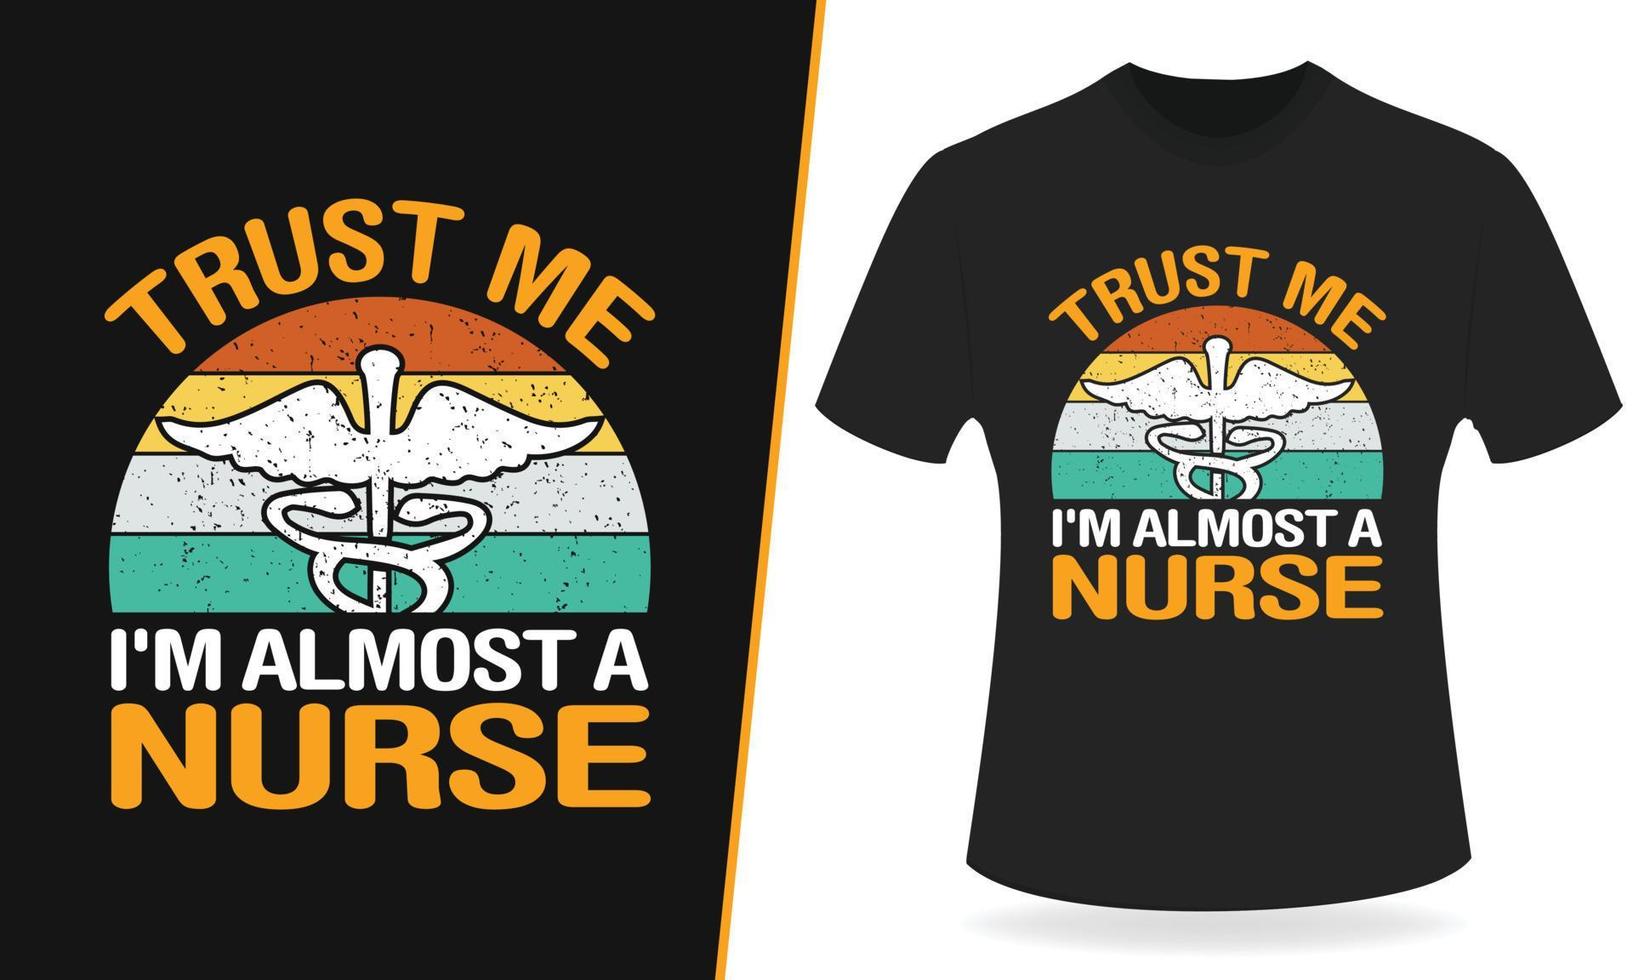 vertrouwen me ik ben bijna een verpleegster typografie t overhemd ontwerp vector